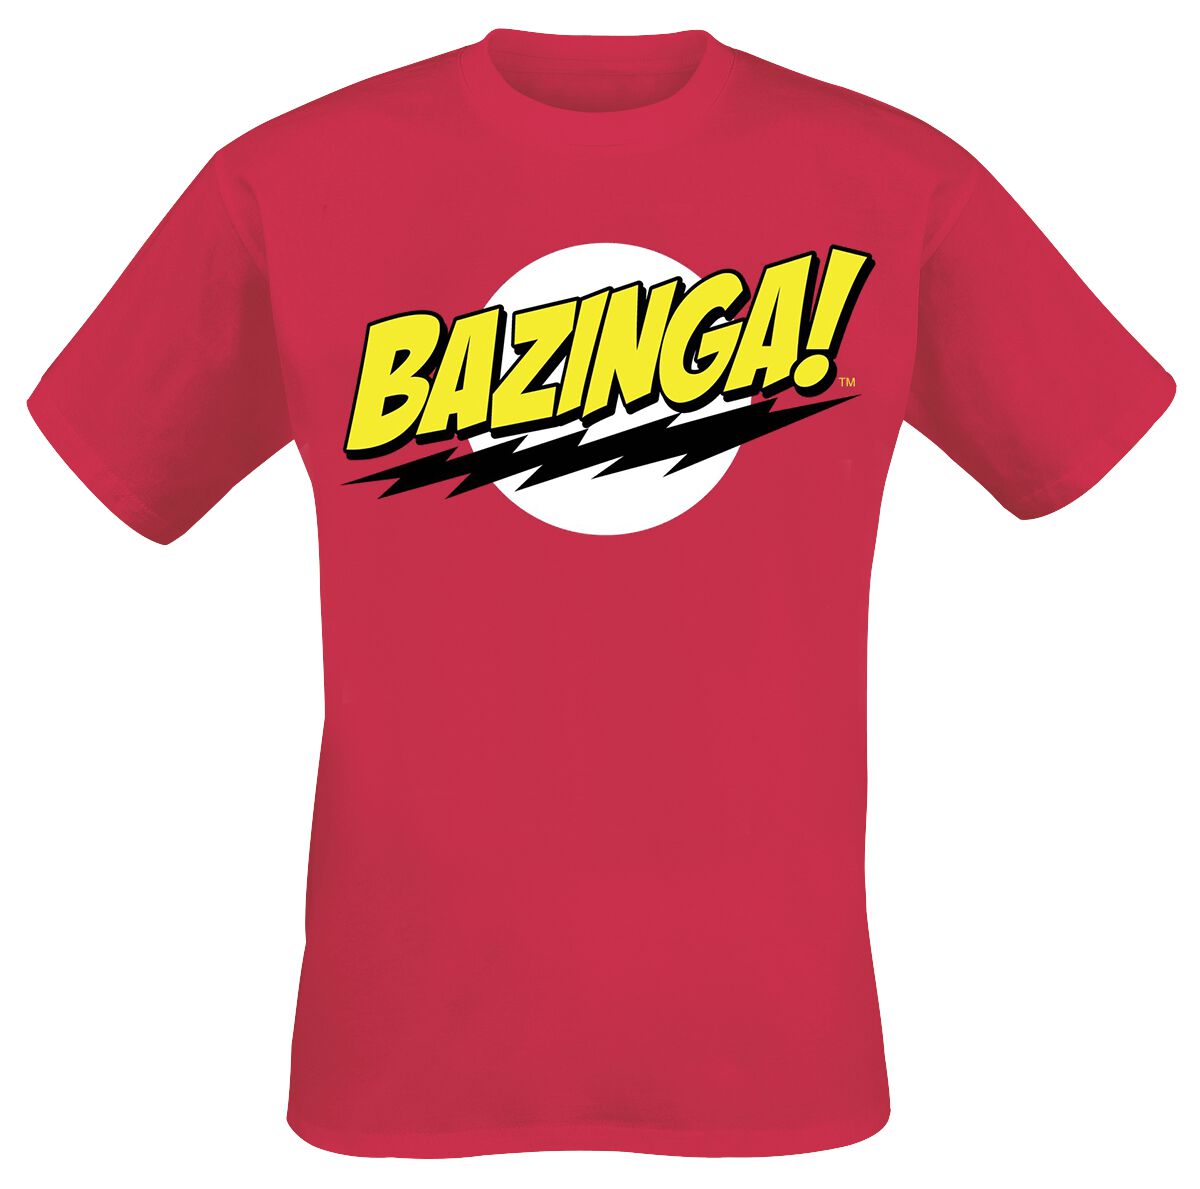 T-Shirt Manches courtes de The Big Bang Theory - Bazinga - S à 4XL - pour Homme - rouge